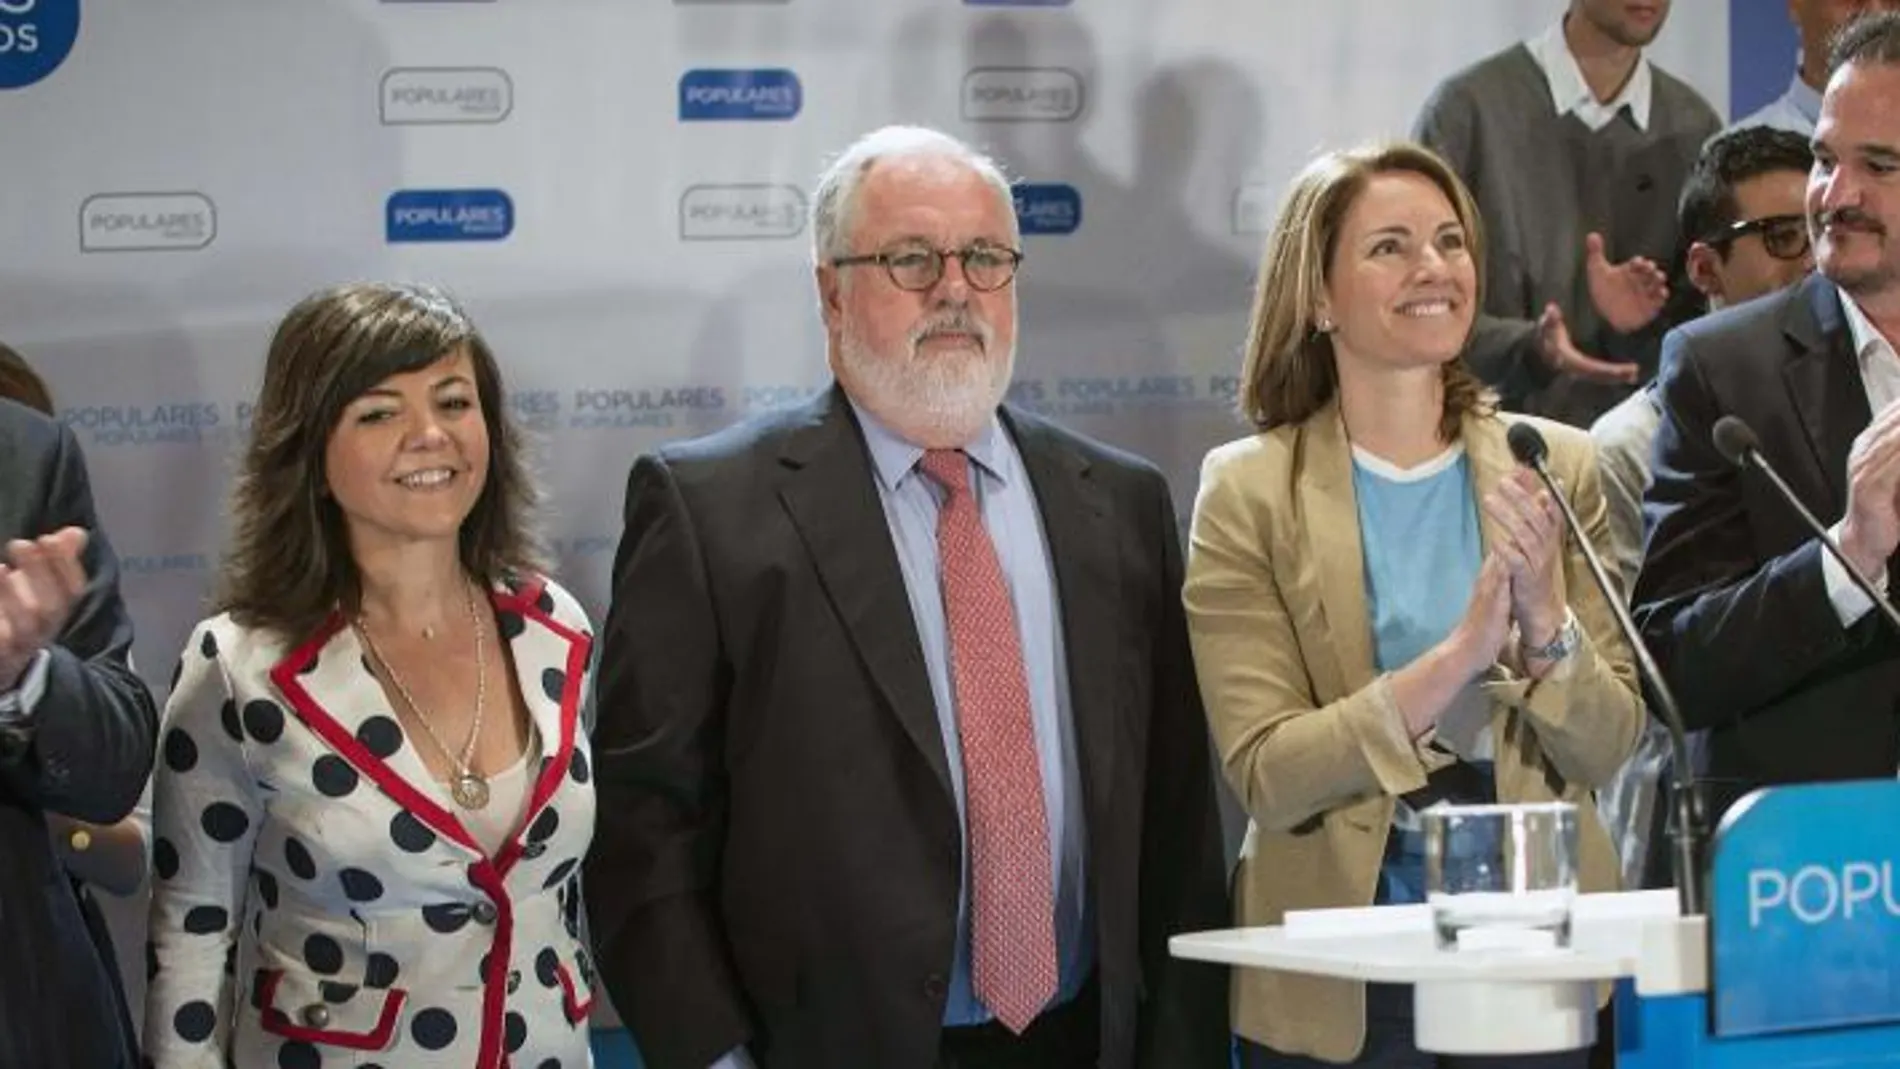 El cabeza de lista del PP a las próximas elecciones europeas, Miguel Arias Cañete (c), ha intervenido en un acto en Bilbao junto a dirigentes del PP vasco